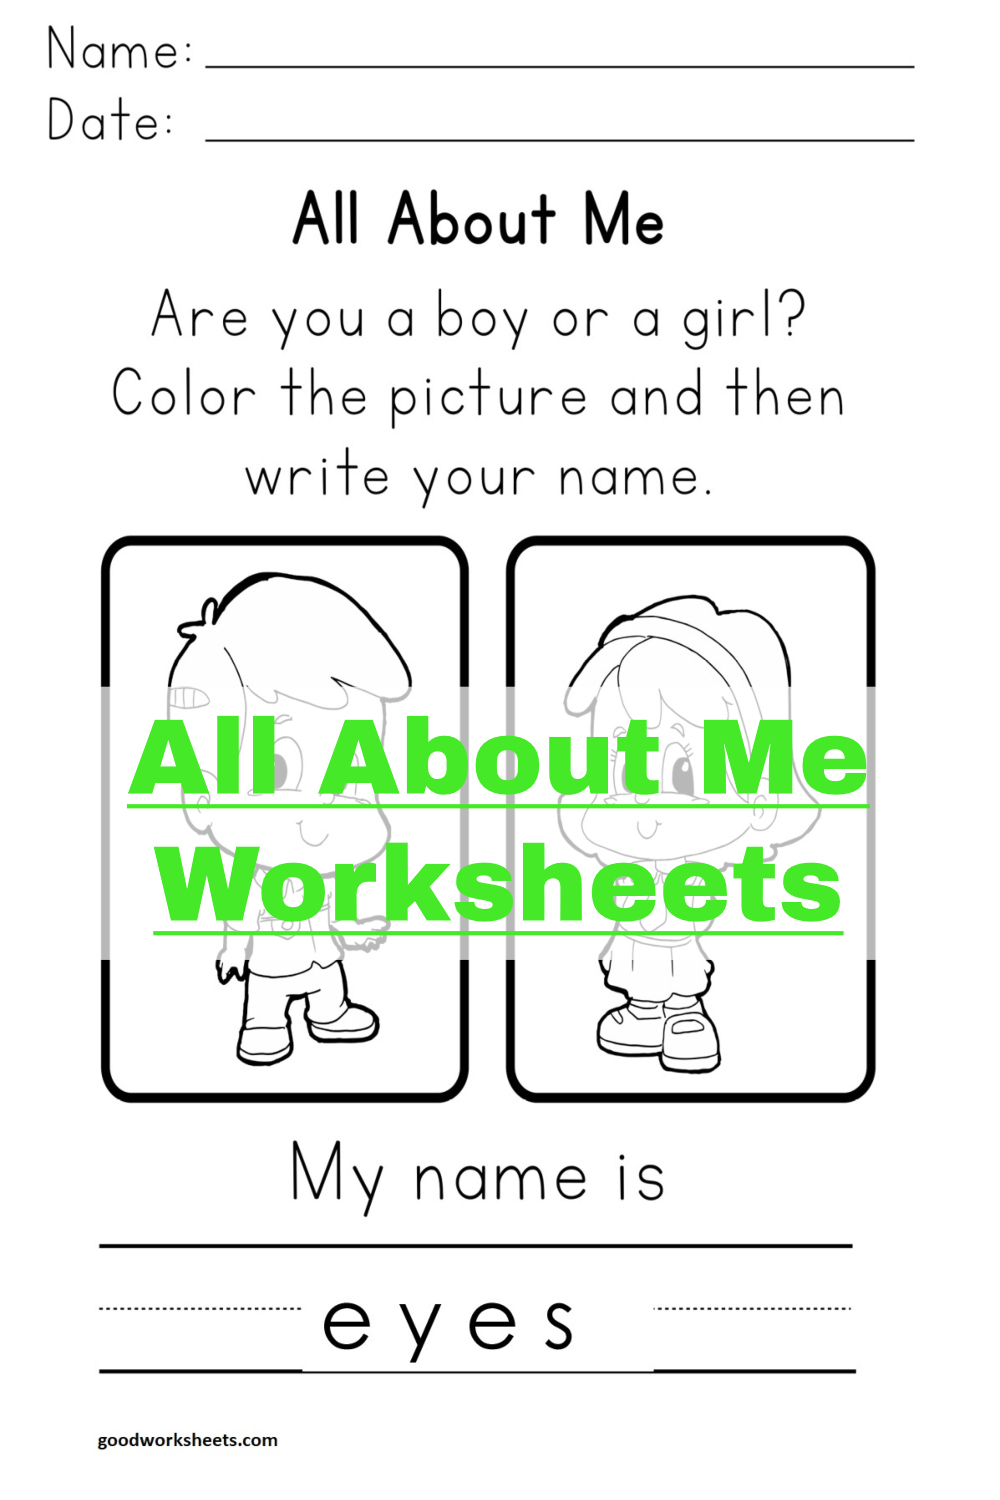 all-about-me-worksheets-free-pdf-kindergarten-printable-kindergarten